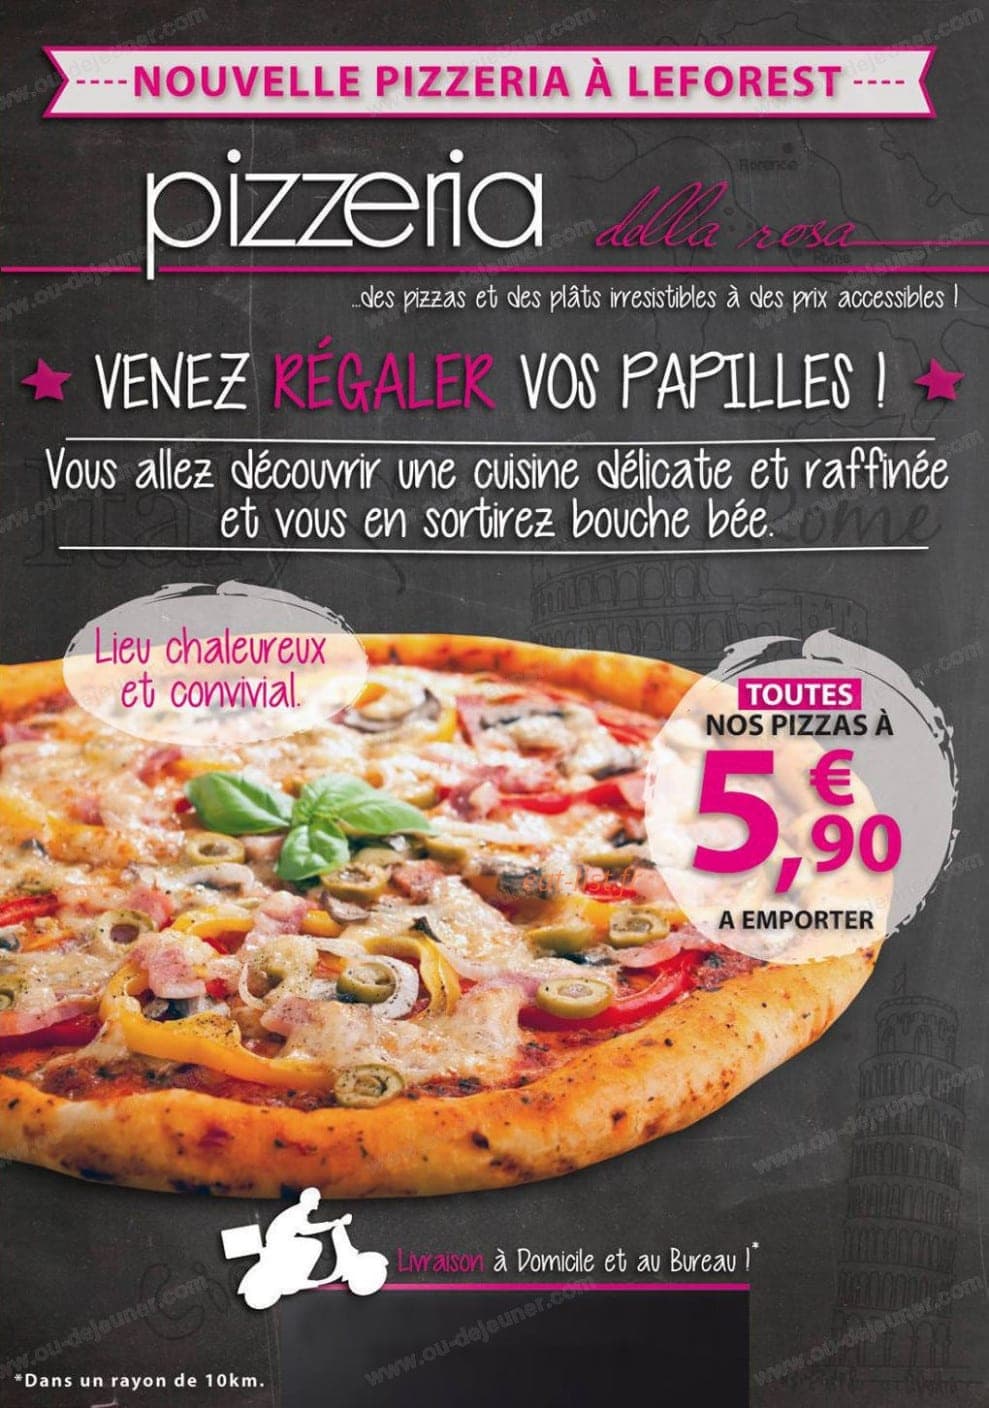 Pizzeria Della Rosa à Leforest - menu et photos